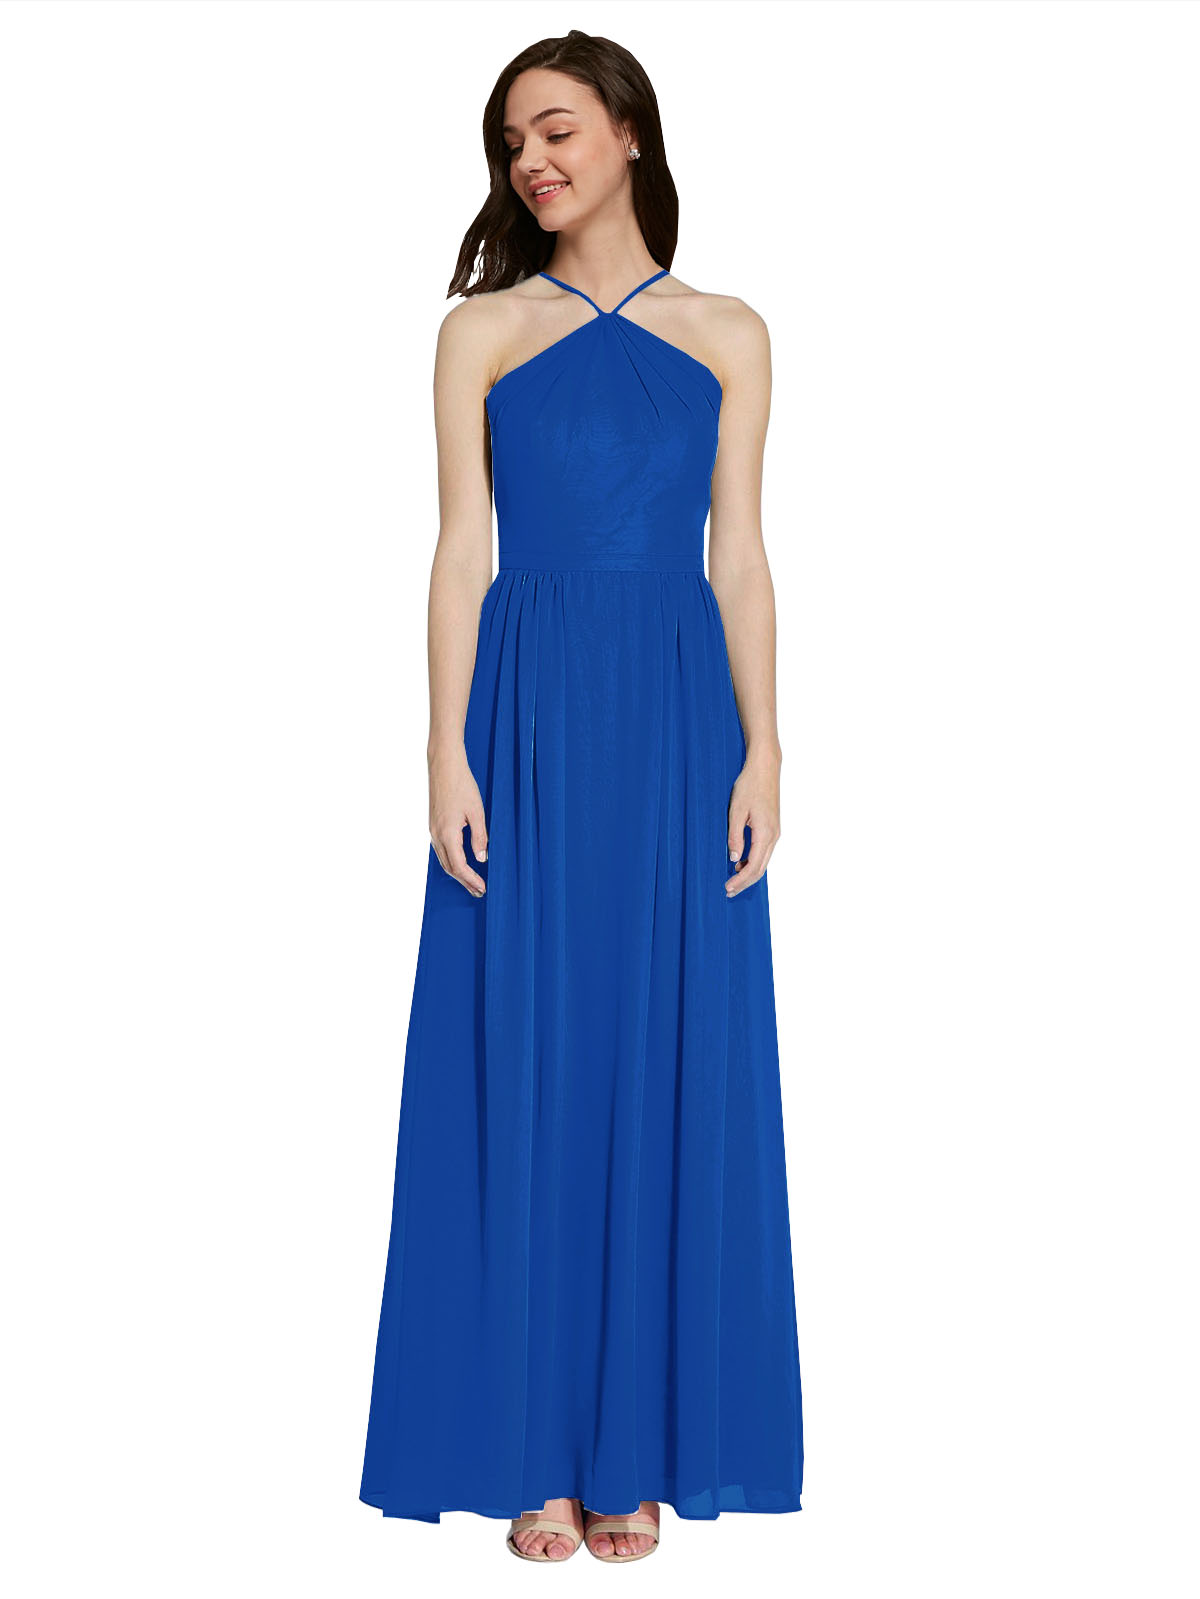 Long A-Line Halter Sleeveless Royal Blue Chiffon Bridesmaid Dress Raya